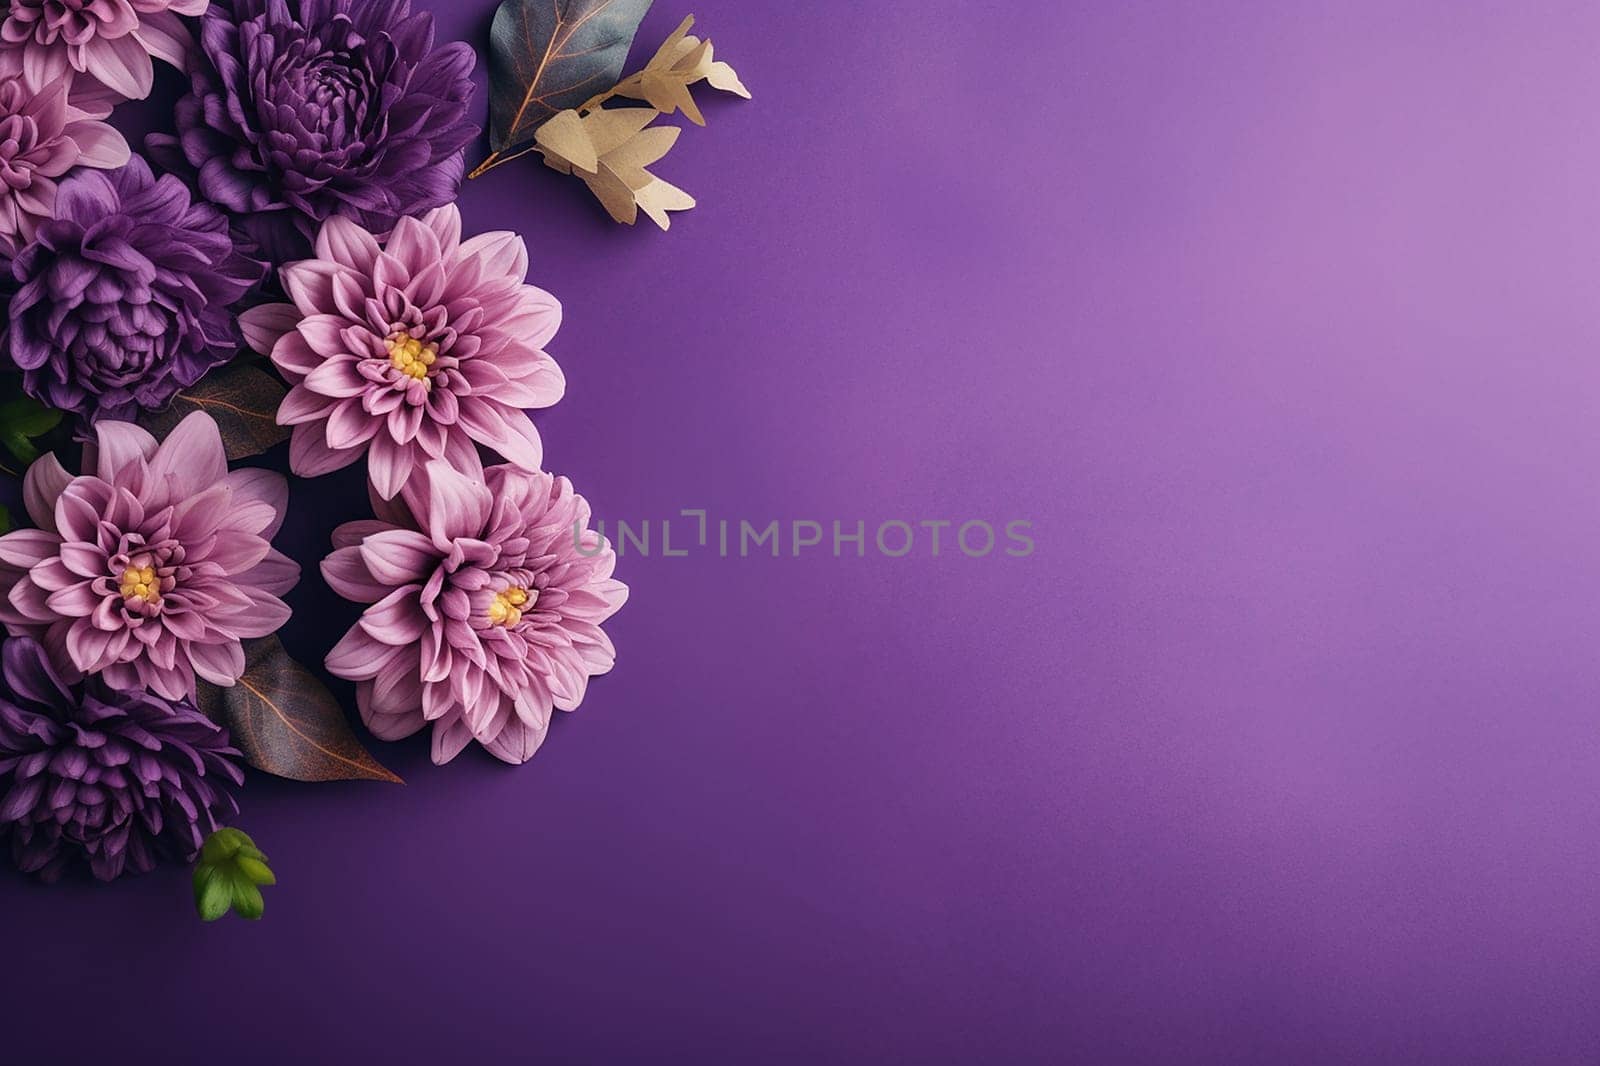 A beautiful arrangement of purple flowers on a purple backdrop.